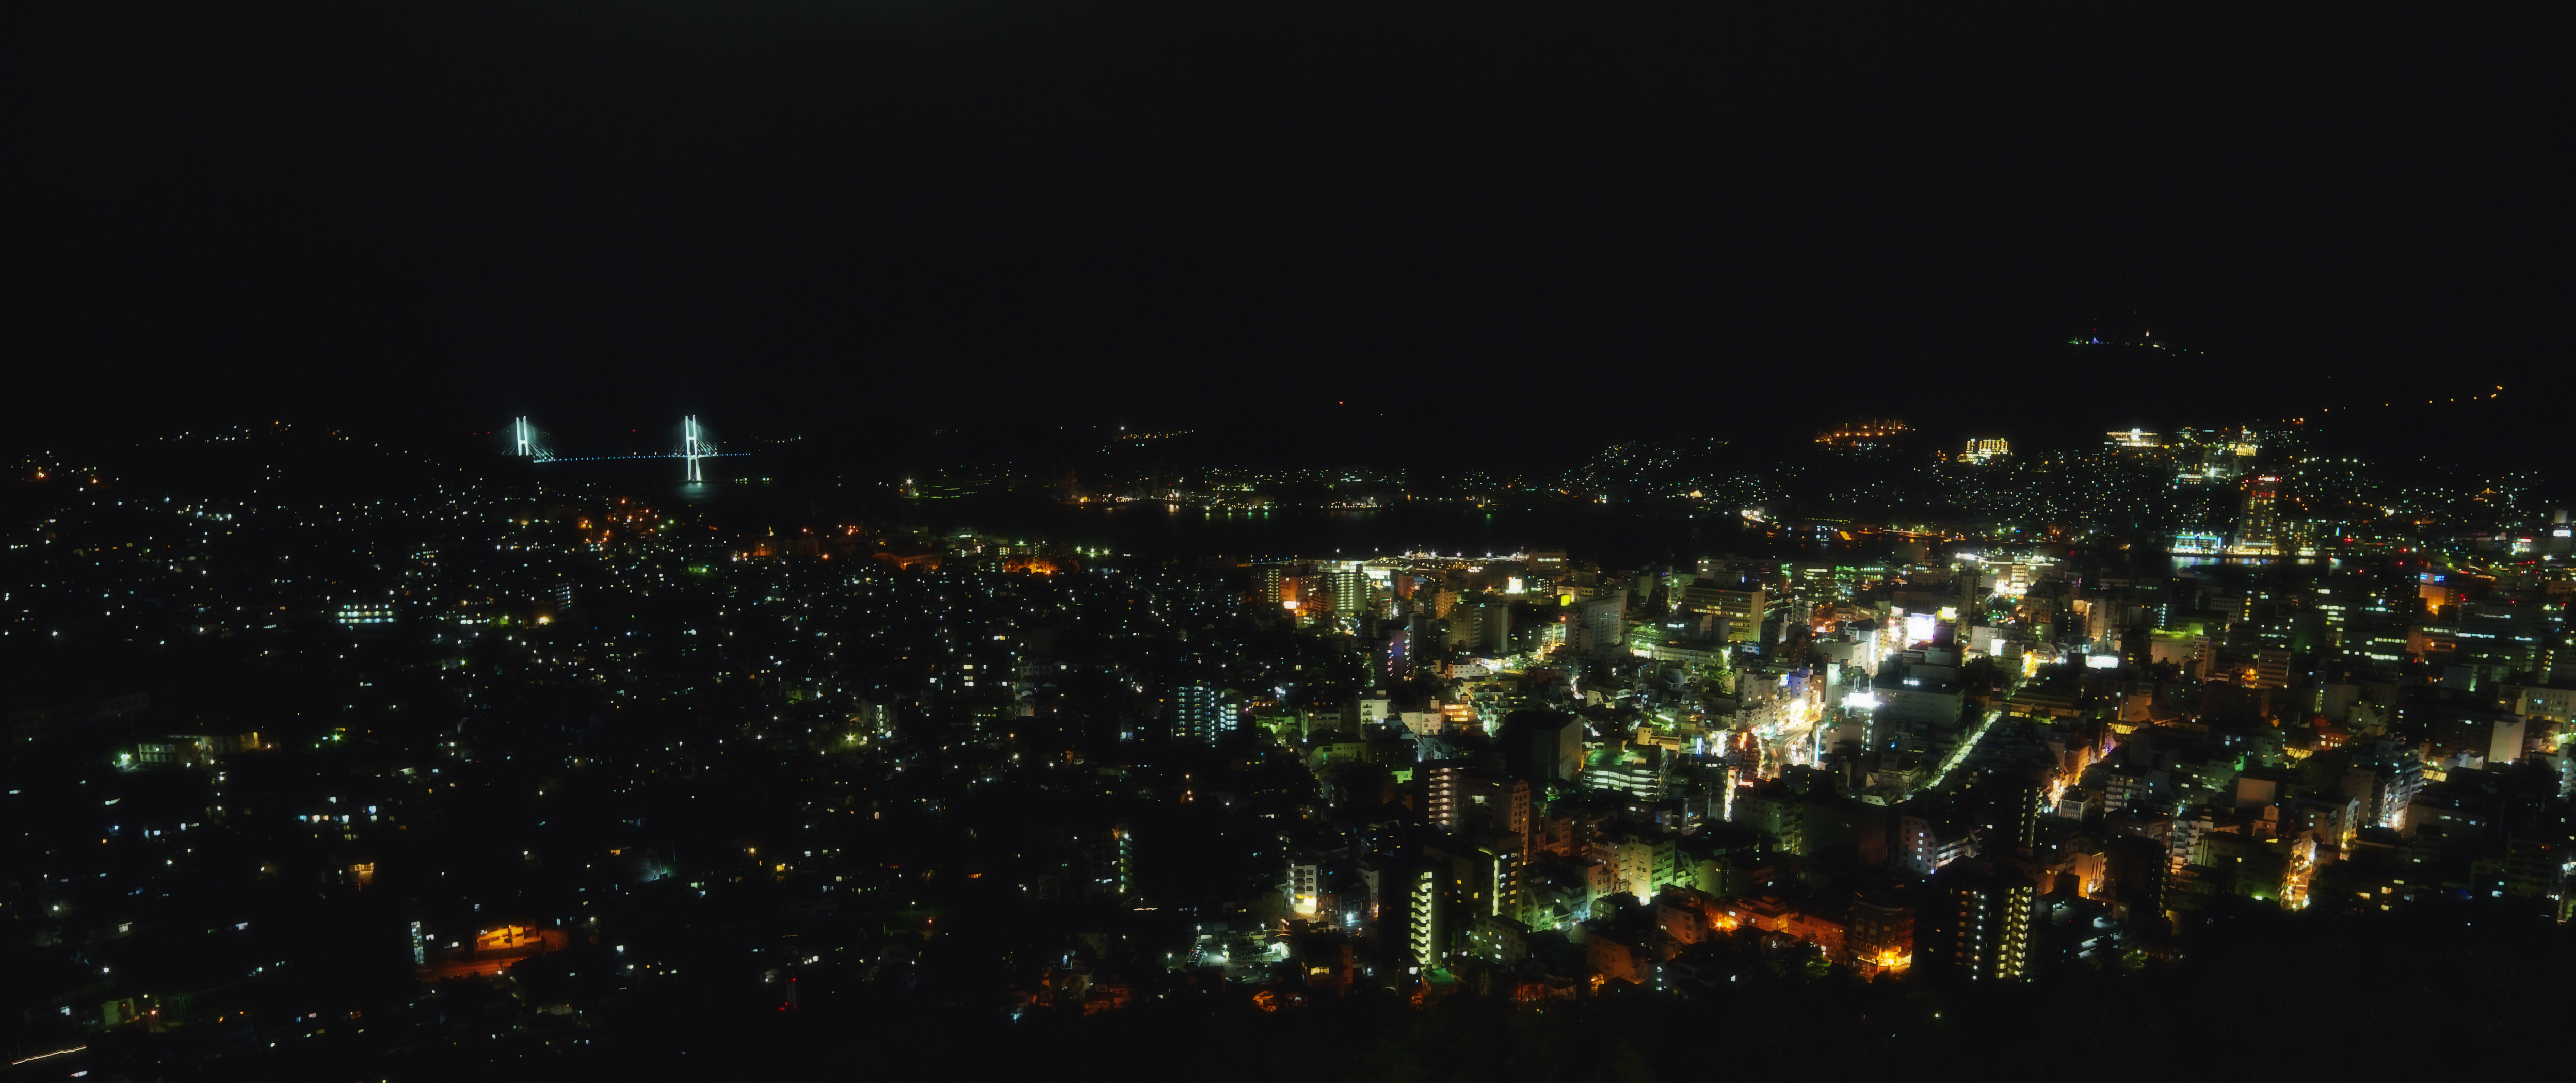 fotografia, material, livra, ajardine, imagine, proveja fotografia,Uma viso noturna de Nagasaki, Iluminao, iluminao de rua, Est iluminado para cima, Deusa Ohashi